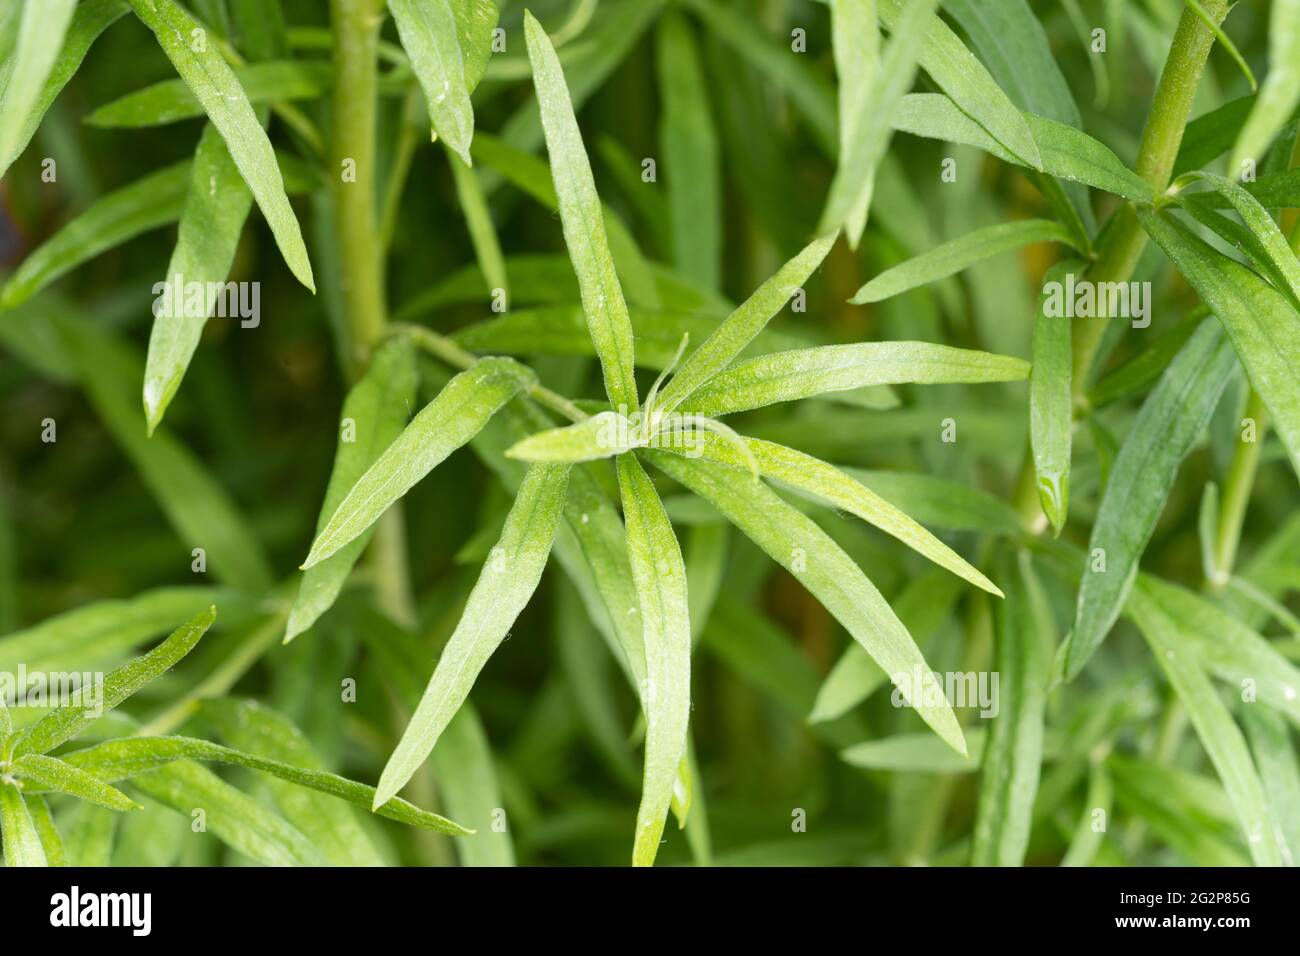 Die Nahaufnahme des Estragons (Artemisia dracunculus), auch bekannt als Estragon, ist eine mehrjährige Pflanze aus der Familie der Sonnenblumen, die in einem Kräutergarten wächst Stockfoto